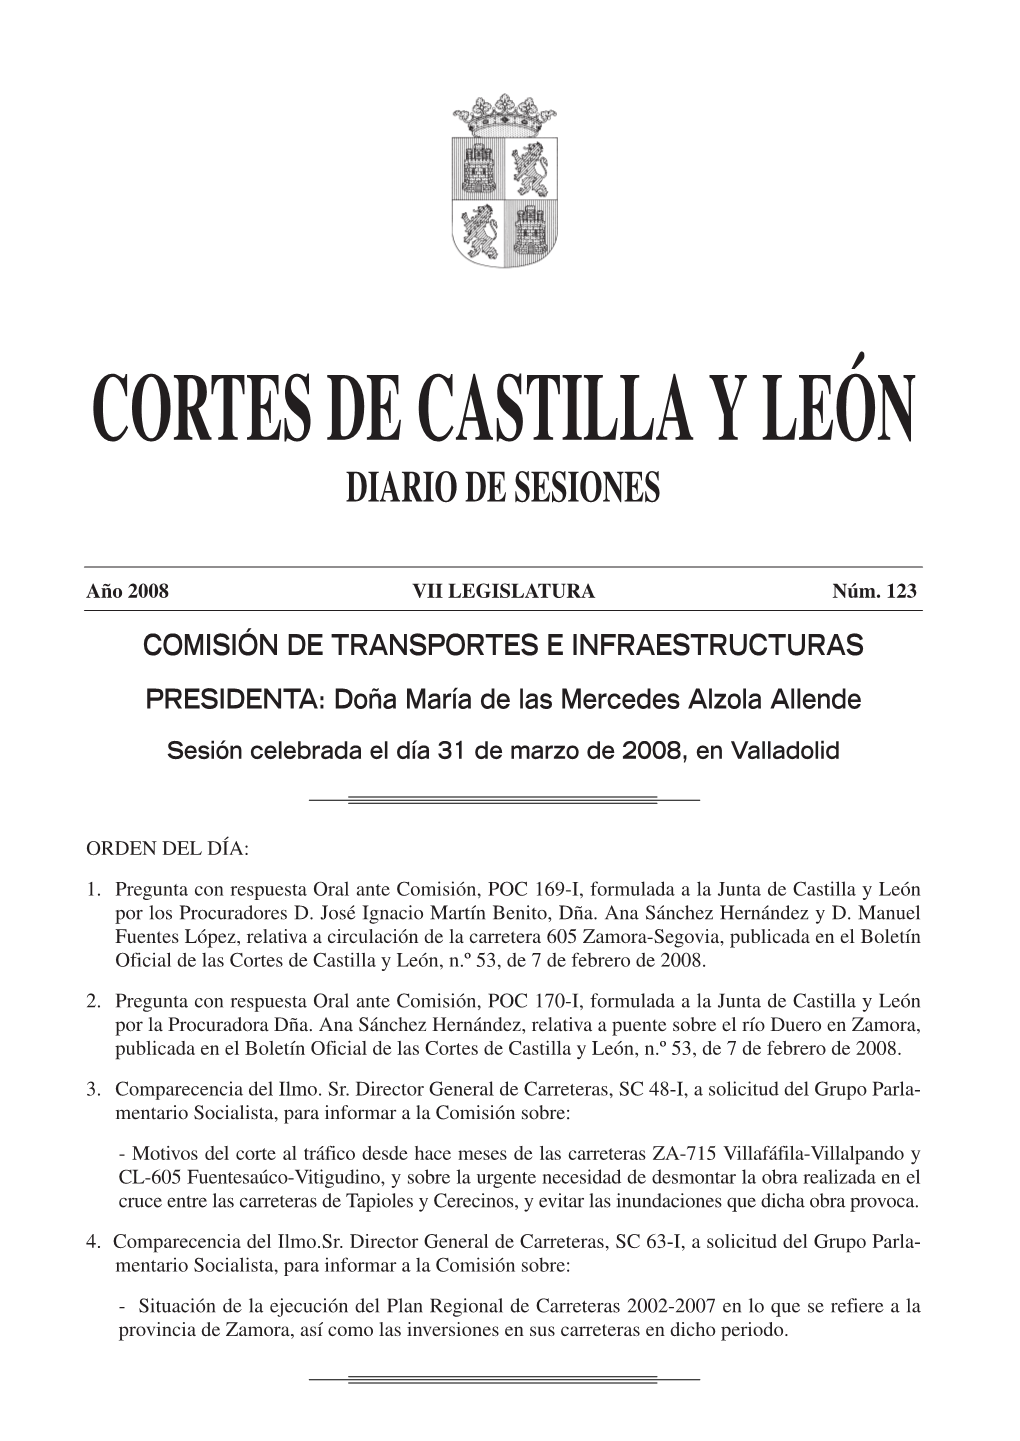 COMISIÓN DE TRANSPORTES E INFRAESTRUCTURAS PRESIDENTA: Doña María De Las Mercedes Alzola Allende